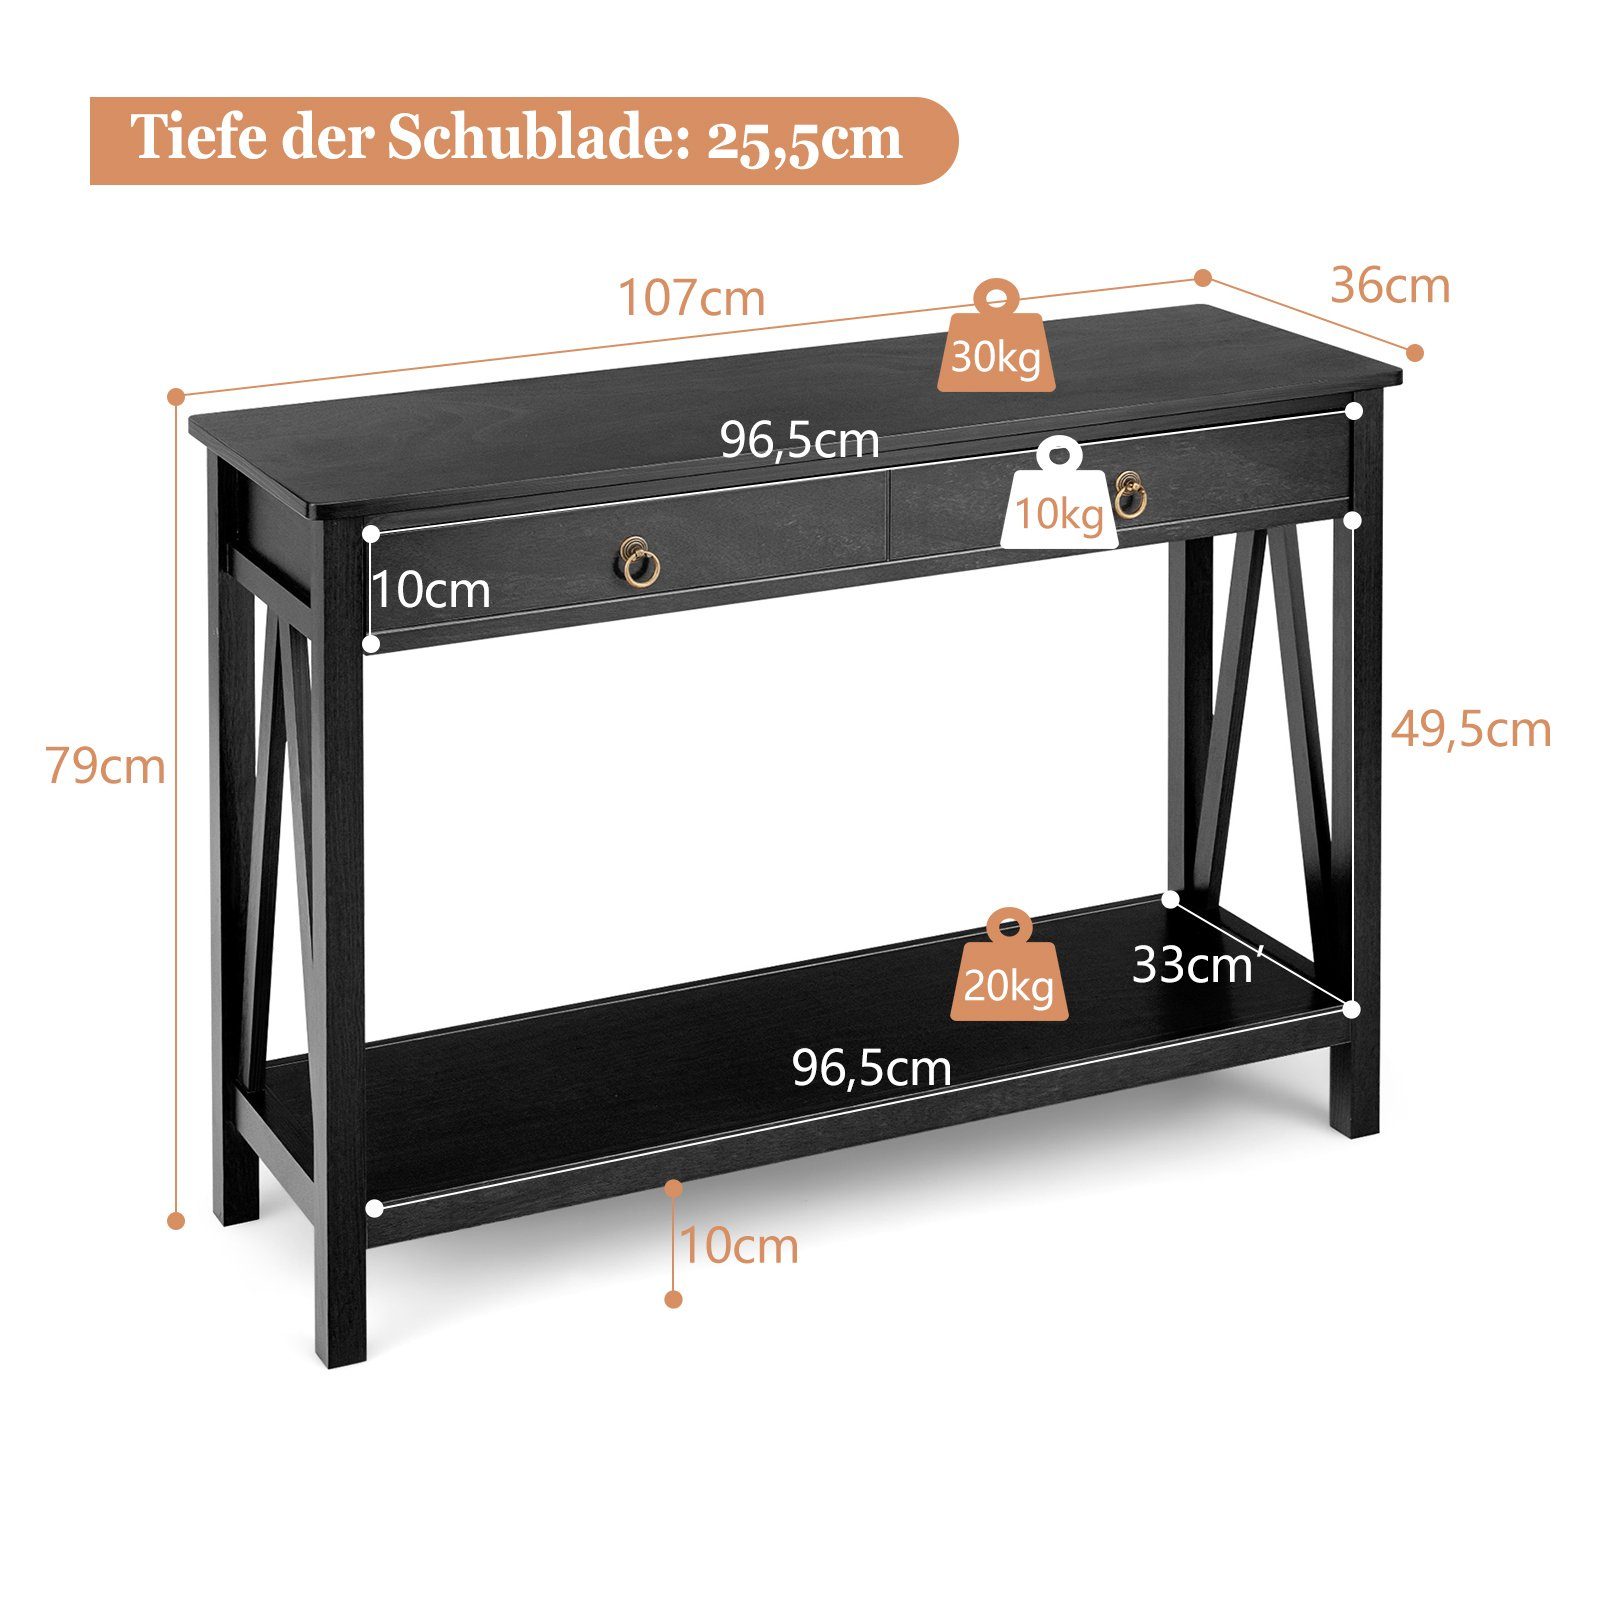 COSTWAY Konsolentisch, mit Schublade&Ablage, schmal, 107x36cm, schwarz Holz